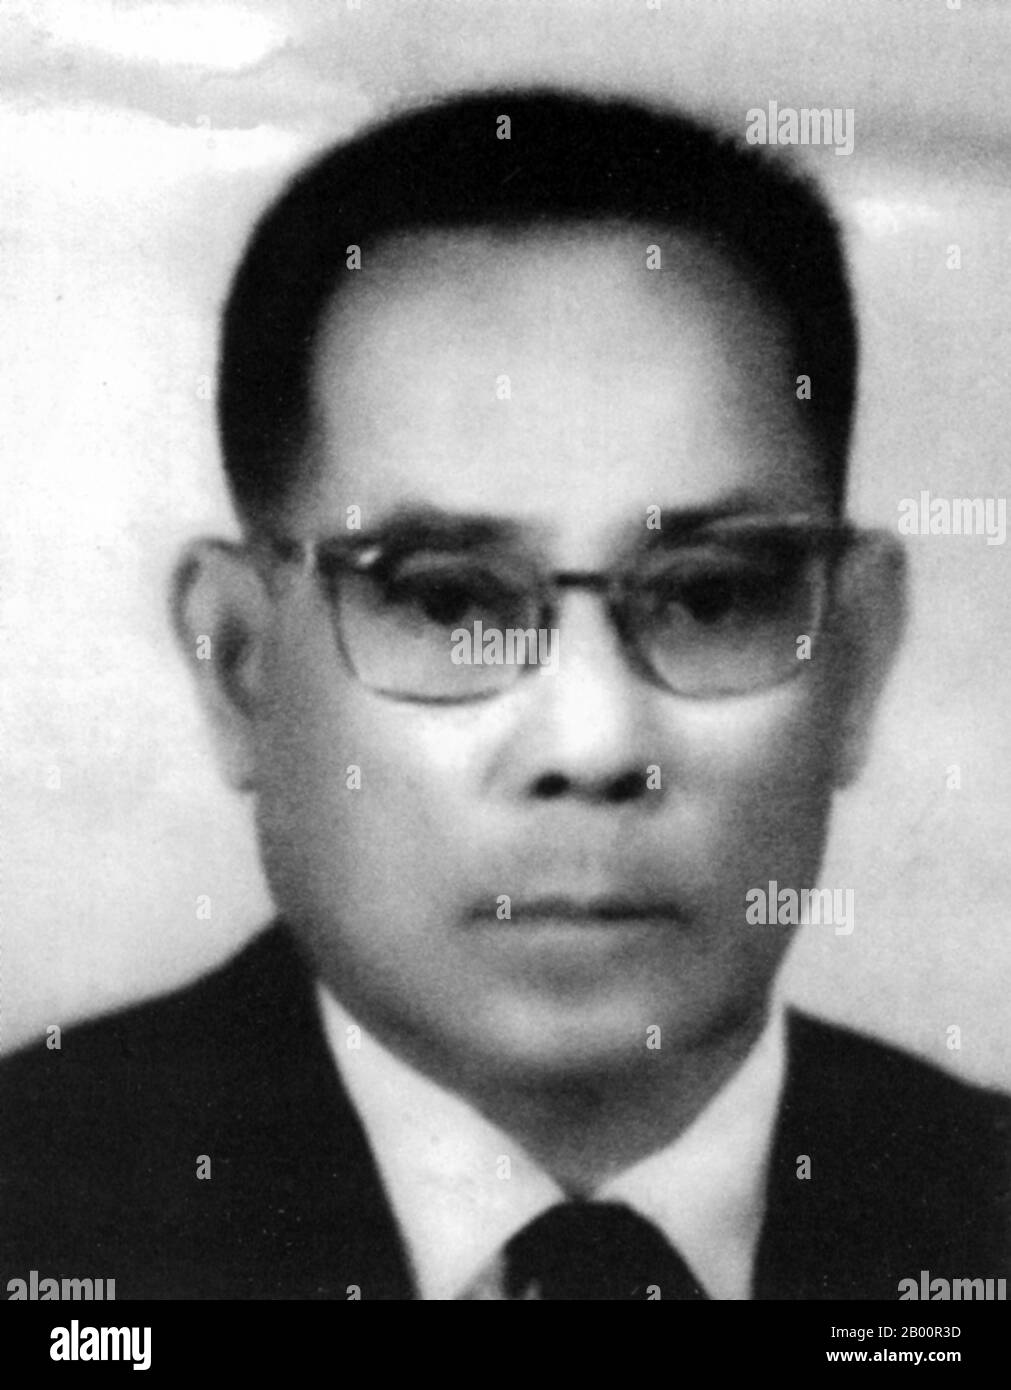 Cambogia: Son Ngoc Thanh (1908 – 1977) è stato un politico repubblicano e nazionalista cambogiano. Il figlio Ngoc Thanh (1908–1977) è stato un politico repubblicano e nazionalista cambogiano, con una lunga storia come ribelle e (per brevi periodi) come ministro del governo. Era un avversario dell'arco del re Norodom Sihanouk e un anti-comunista. Morì in custodia in Vietnam nel 1977. Foto Stock